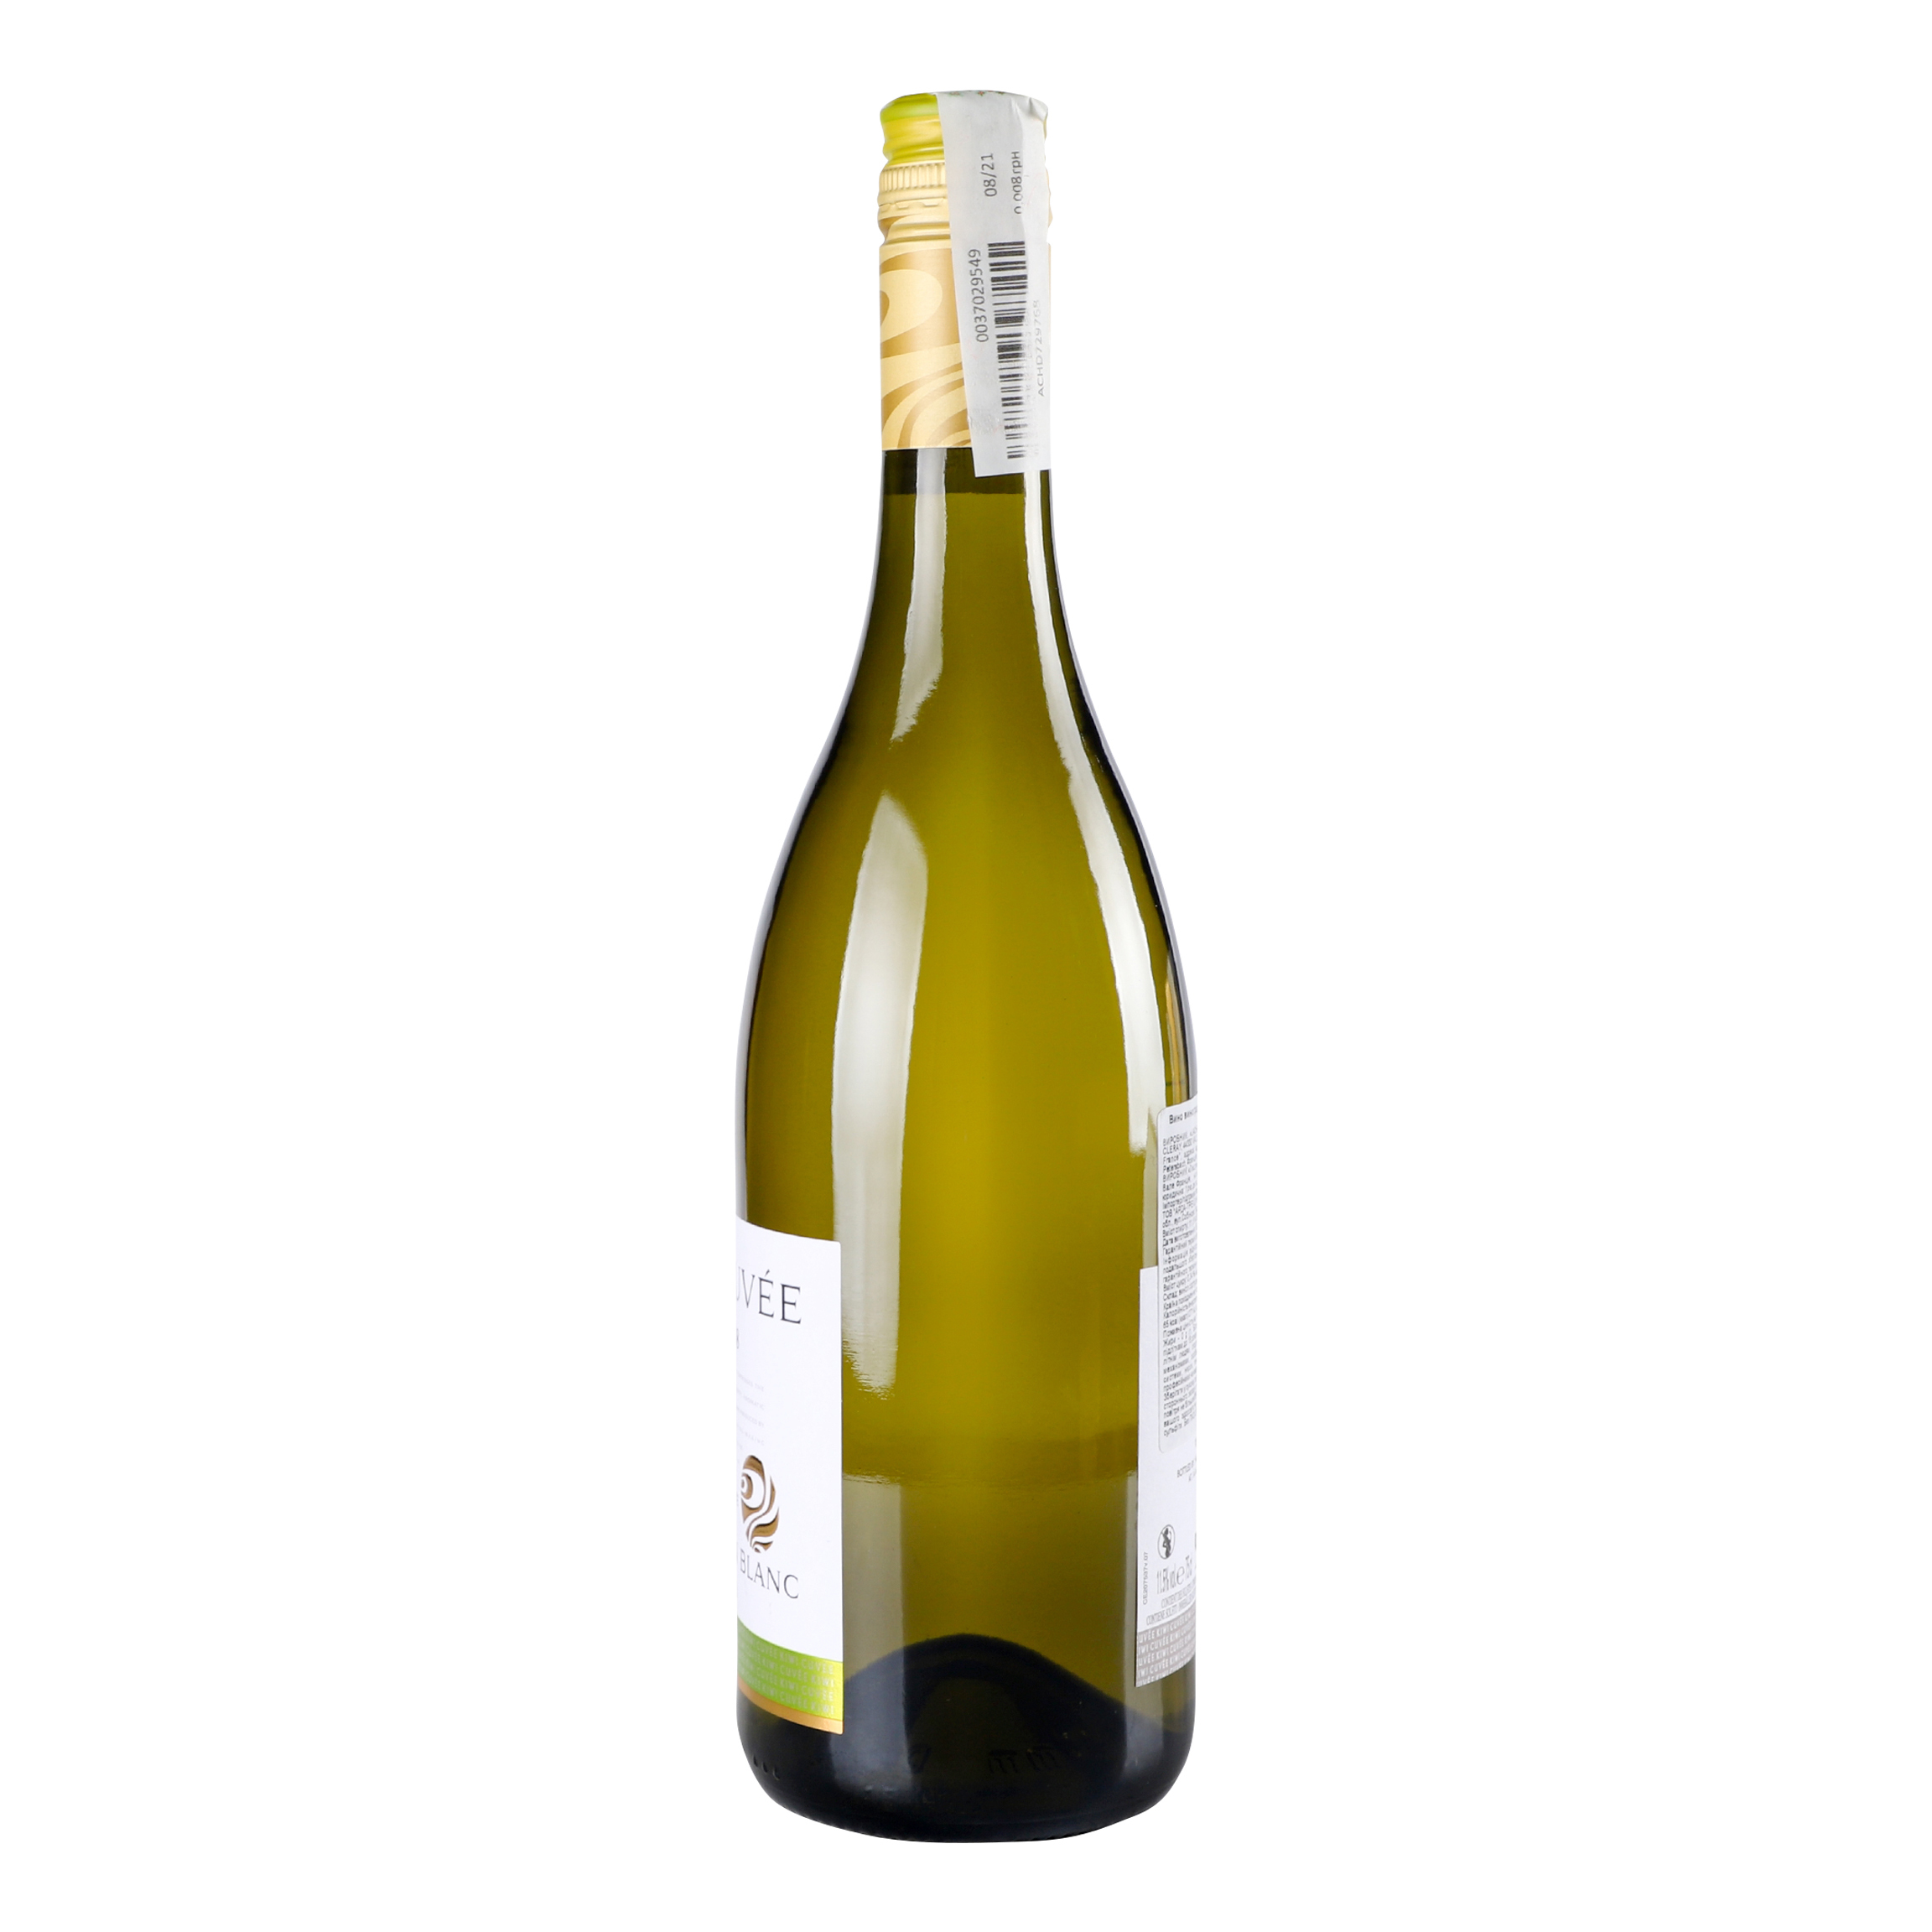 Вино Kiwi Cuvee Bin 88 Sauvignon Blanc, белое, сухое, 0,75 л - фото 2